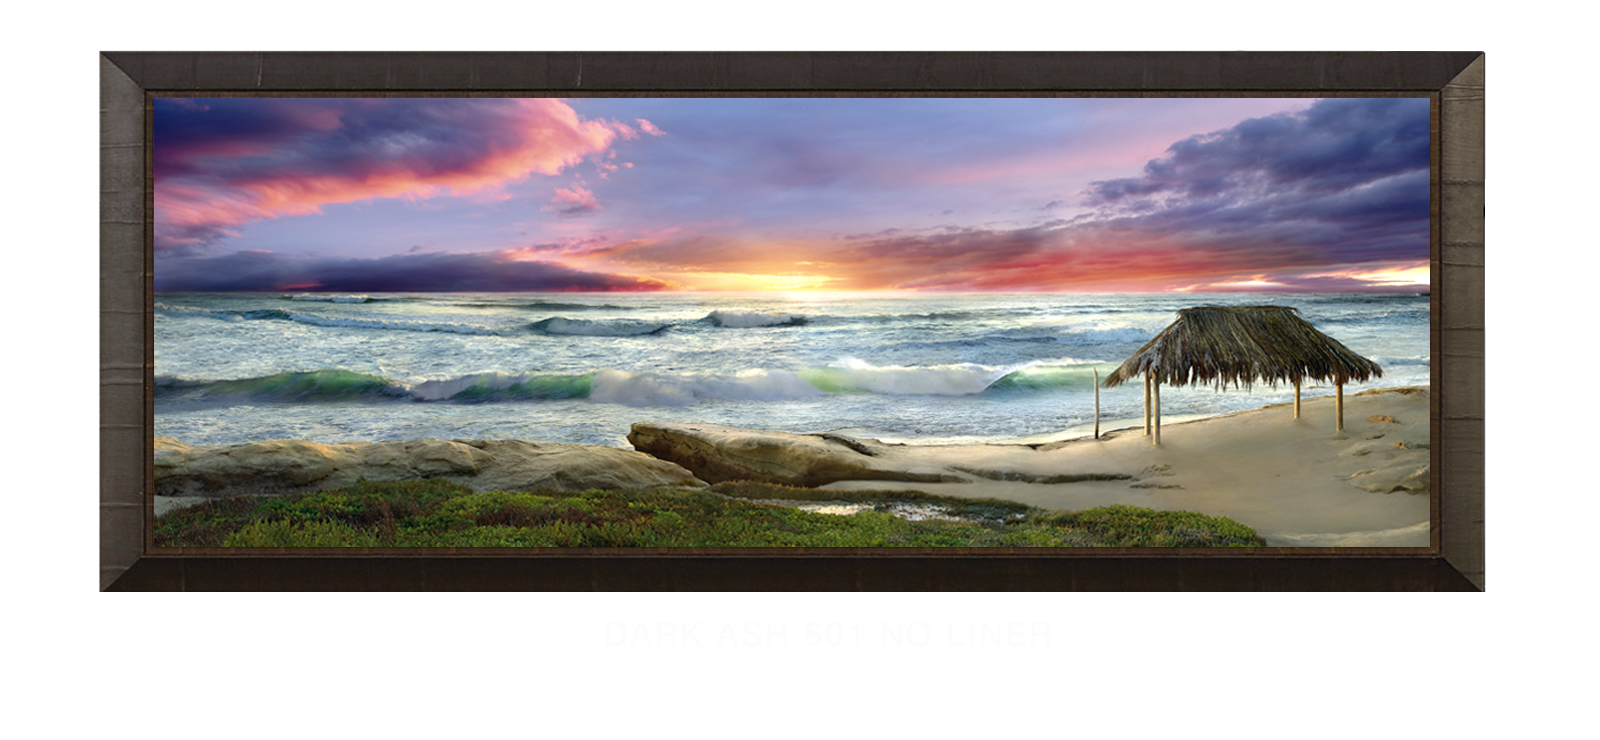 28AWAITANCE Dark Ash 601 w_No Liner T